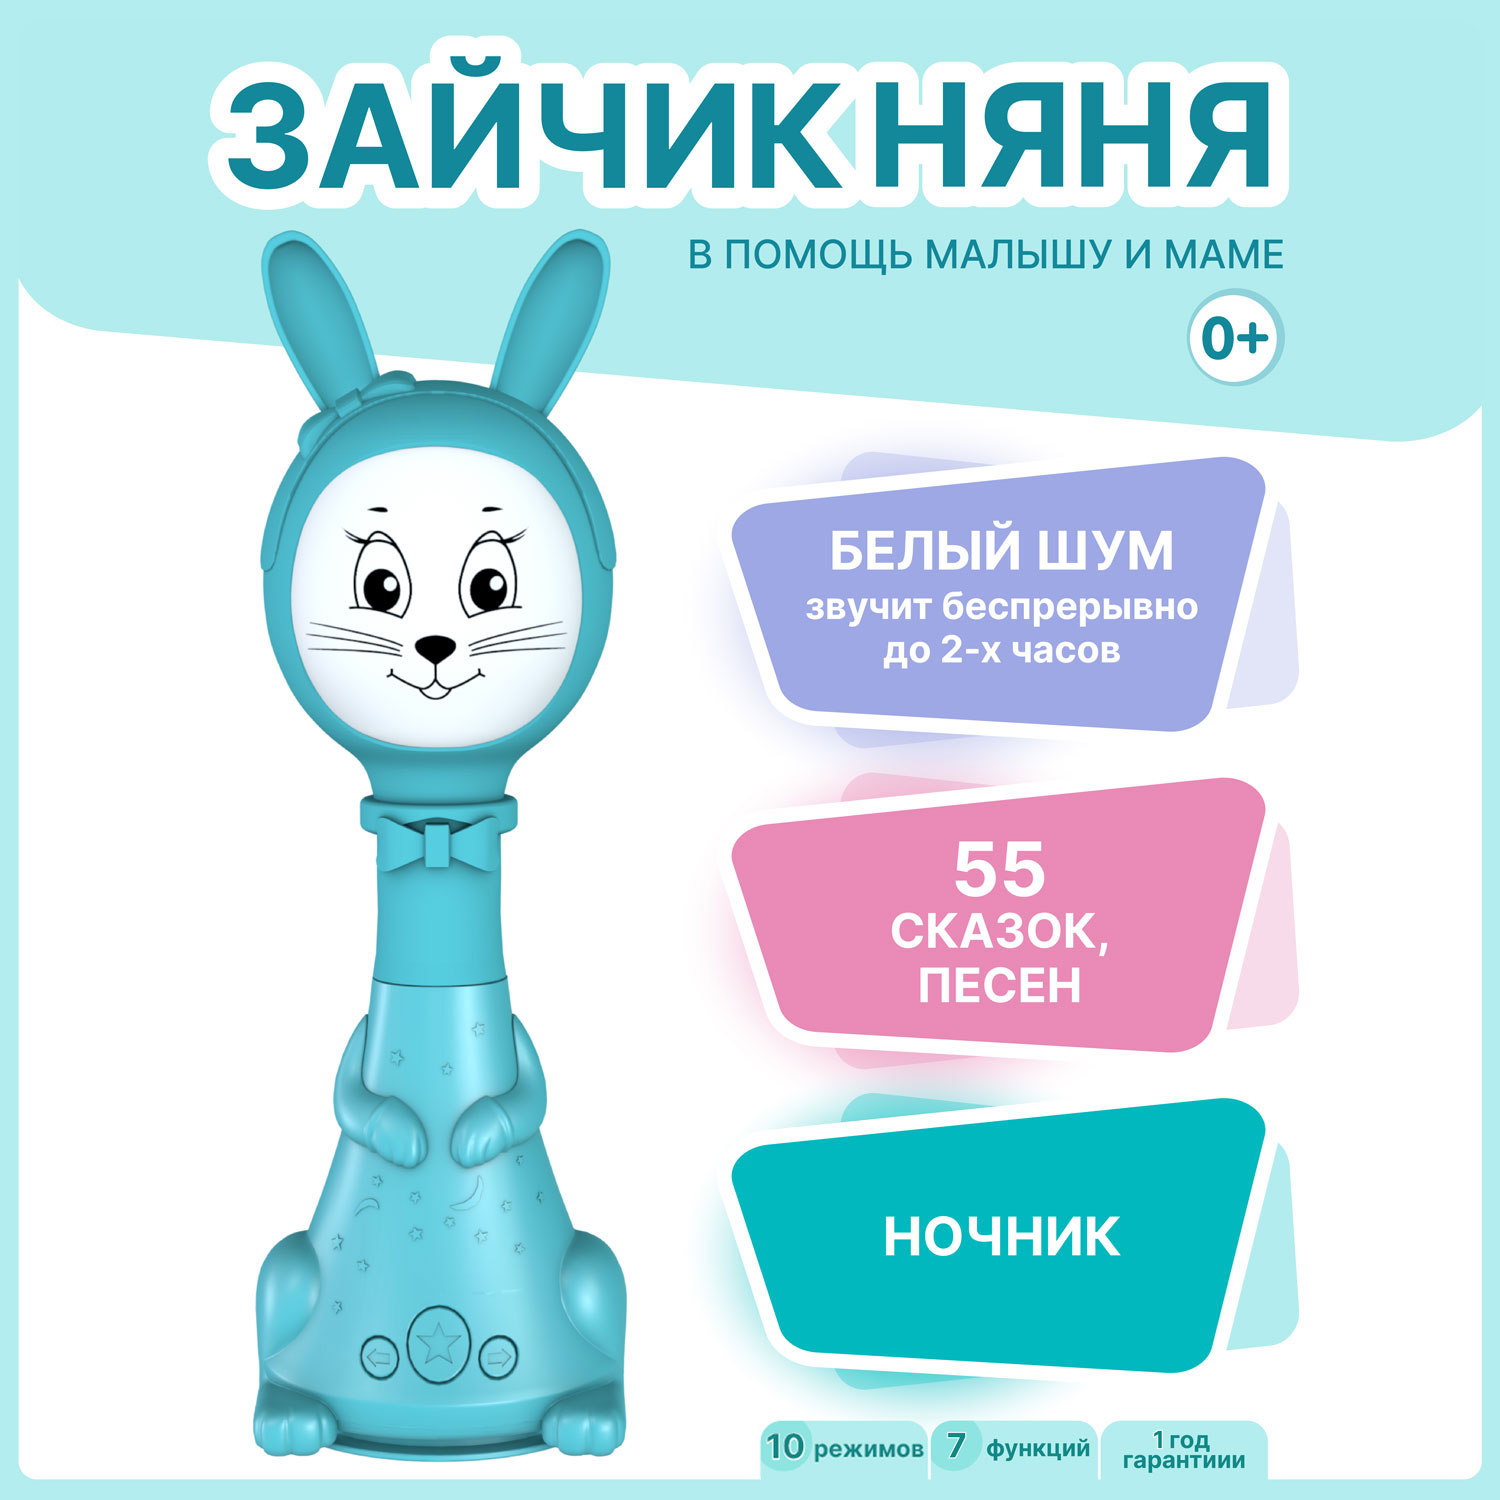 Интерактивная развивающая игрушка для малышей BertToys Зайчик Няня FD125/Голубой развивающая игрушка chicco зайчик doudou 9609000000